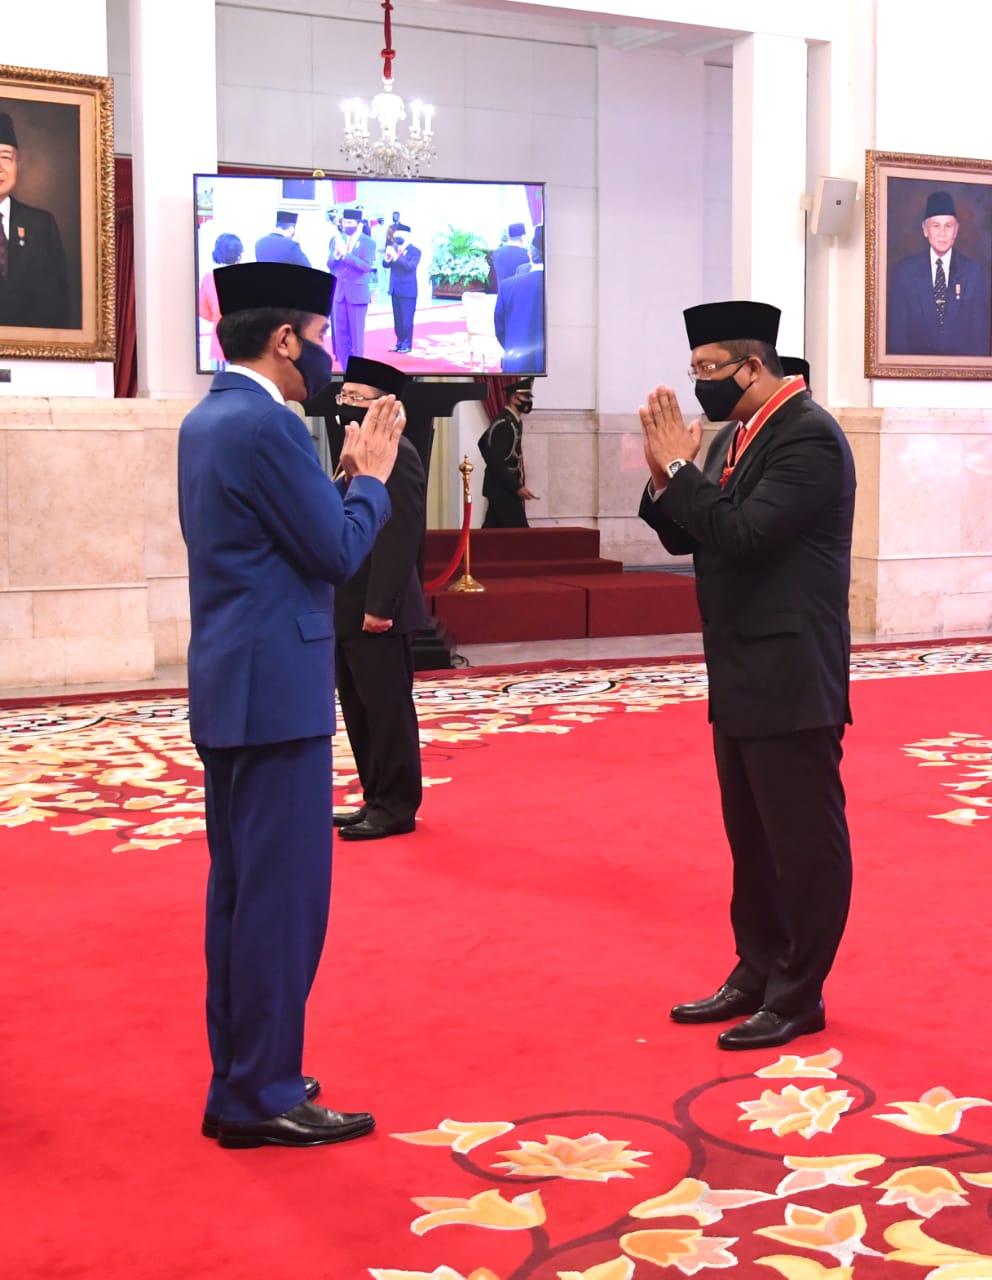 Bersamaan Dengan Fadli Zon Dan Fahri Hamzah, Pimpinan DPD RI Mahyudin Menerima Tanda Kehormatan Bintang Mahaputera Nararya